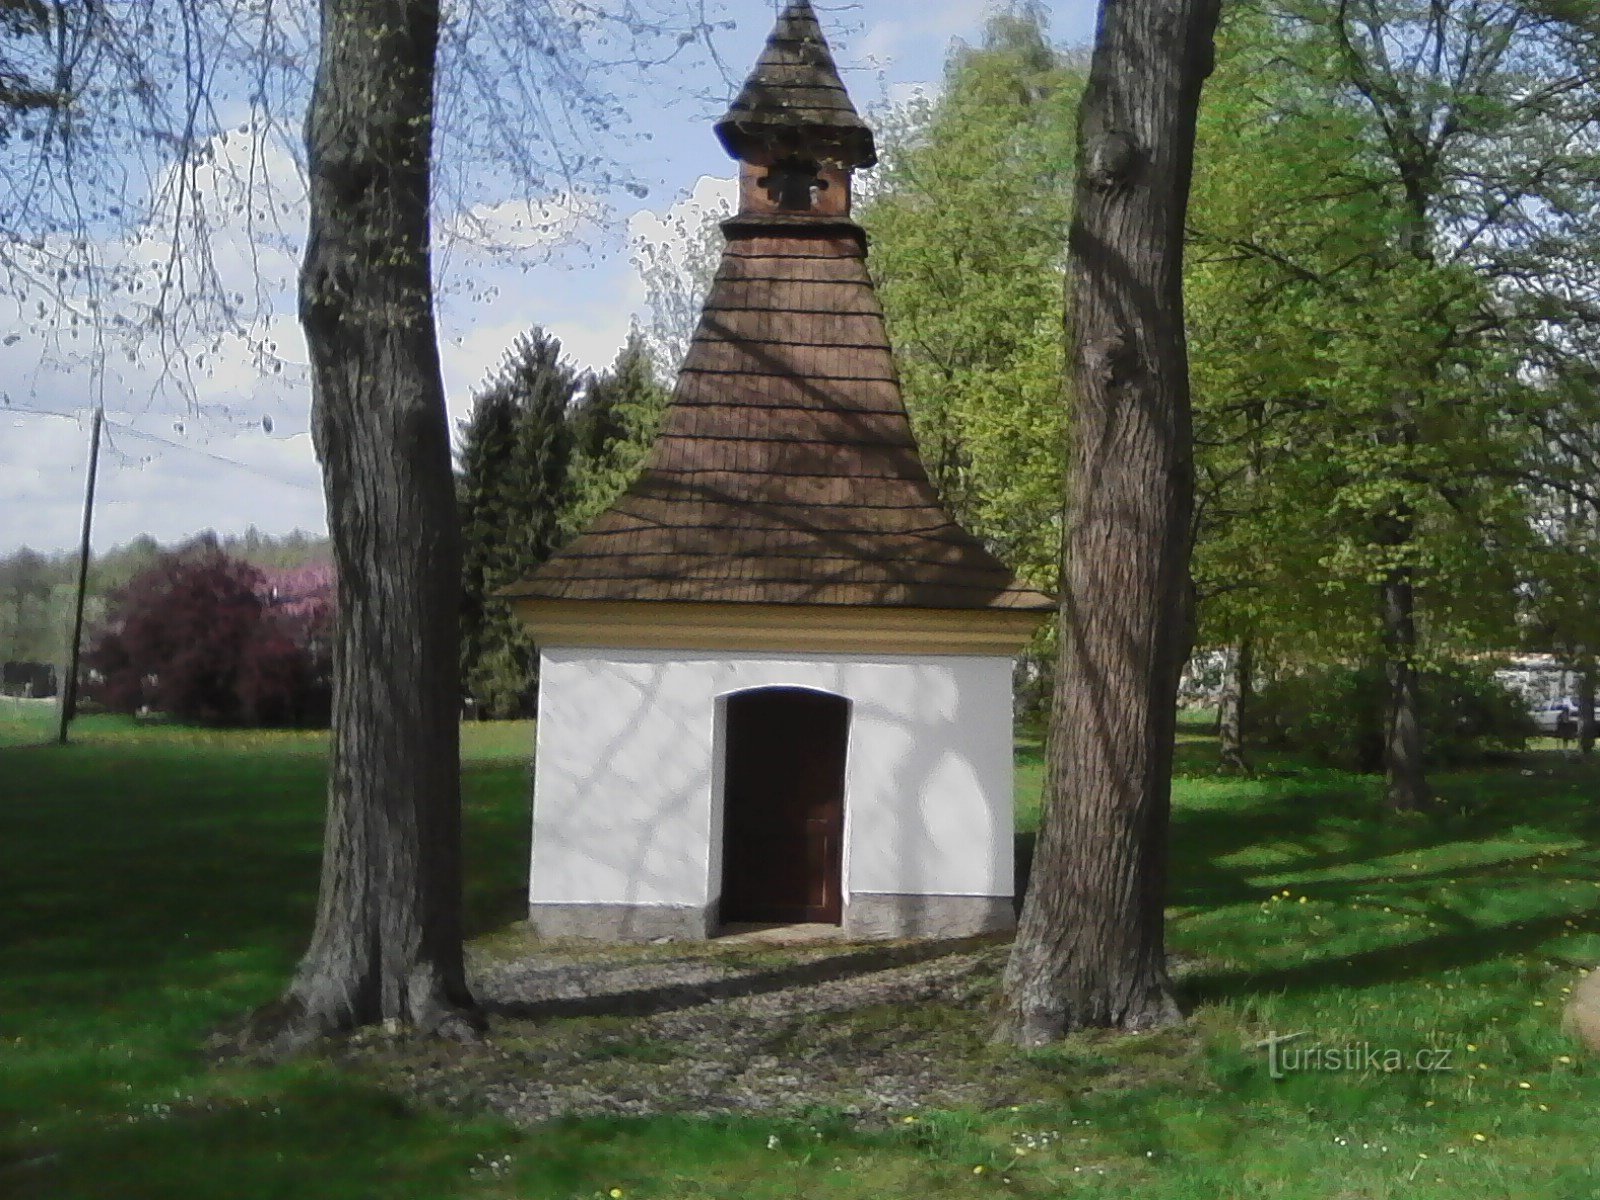 2. Pænt repareret kapel St. Anna i Leskovice. Den første skriftlige omtale af eksistensen